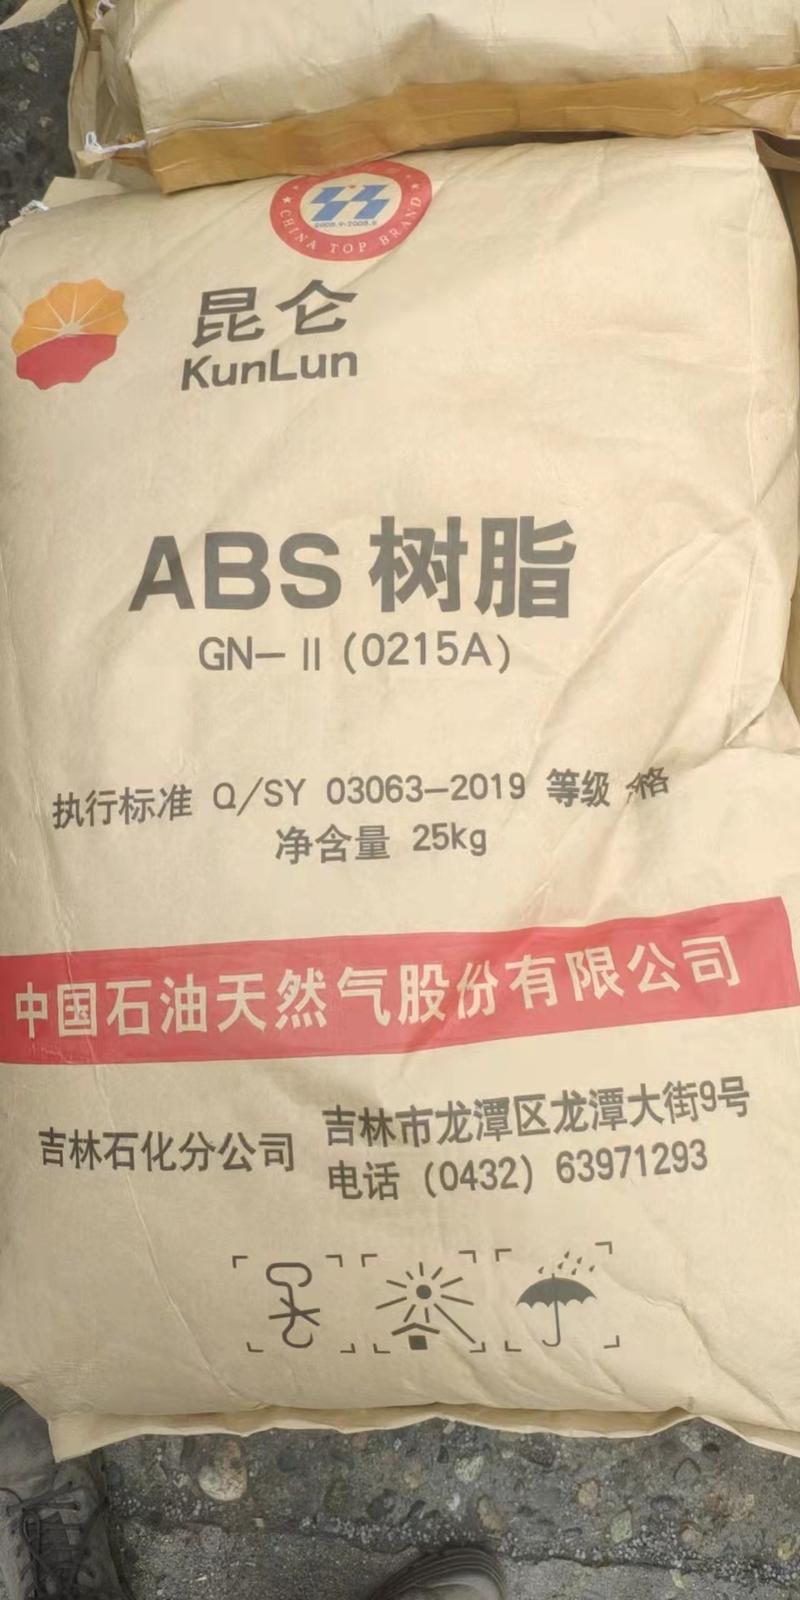 通用abs树脂 0215a,国产普通abs树脂厂家展示产品图片